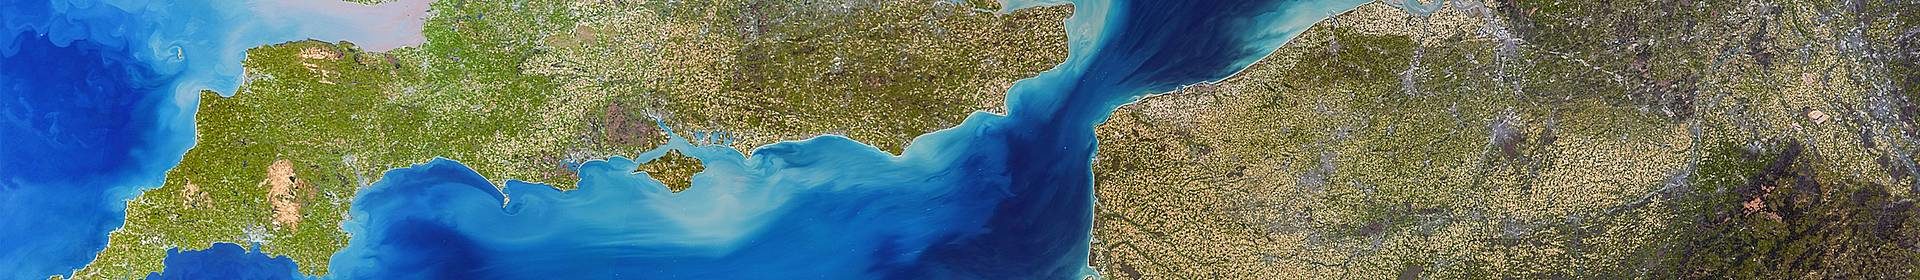 Land around English Channel